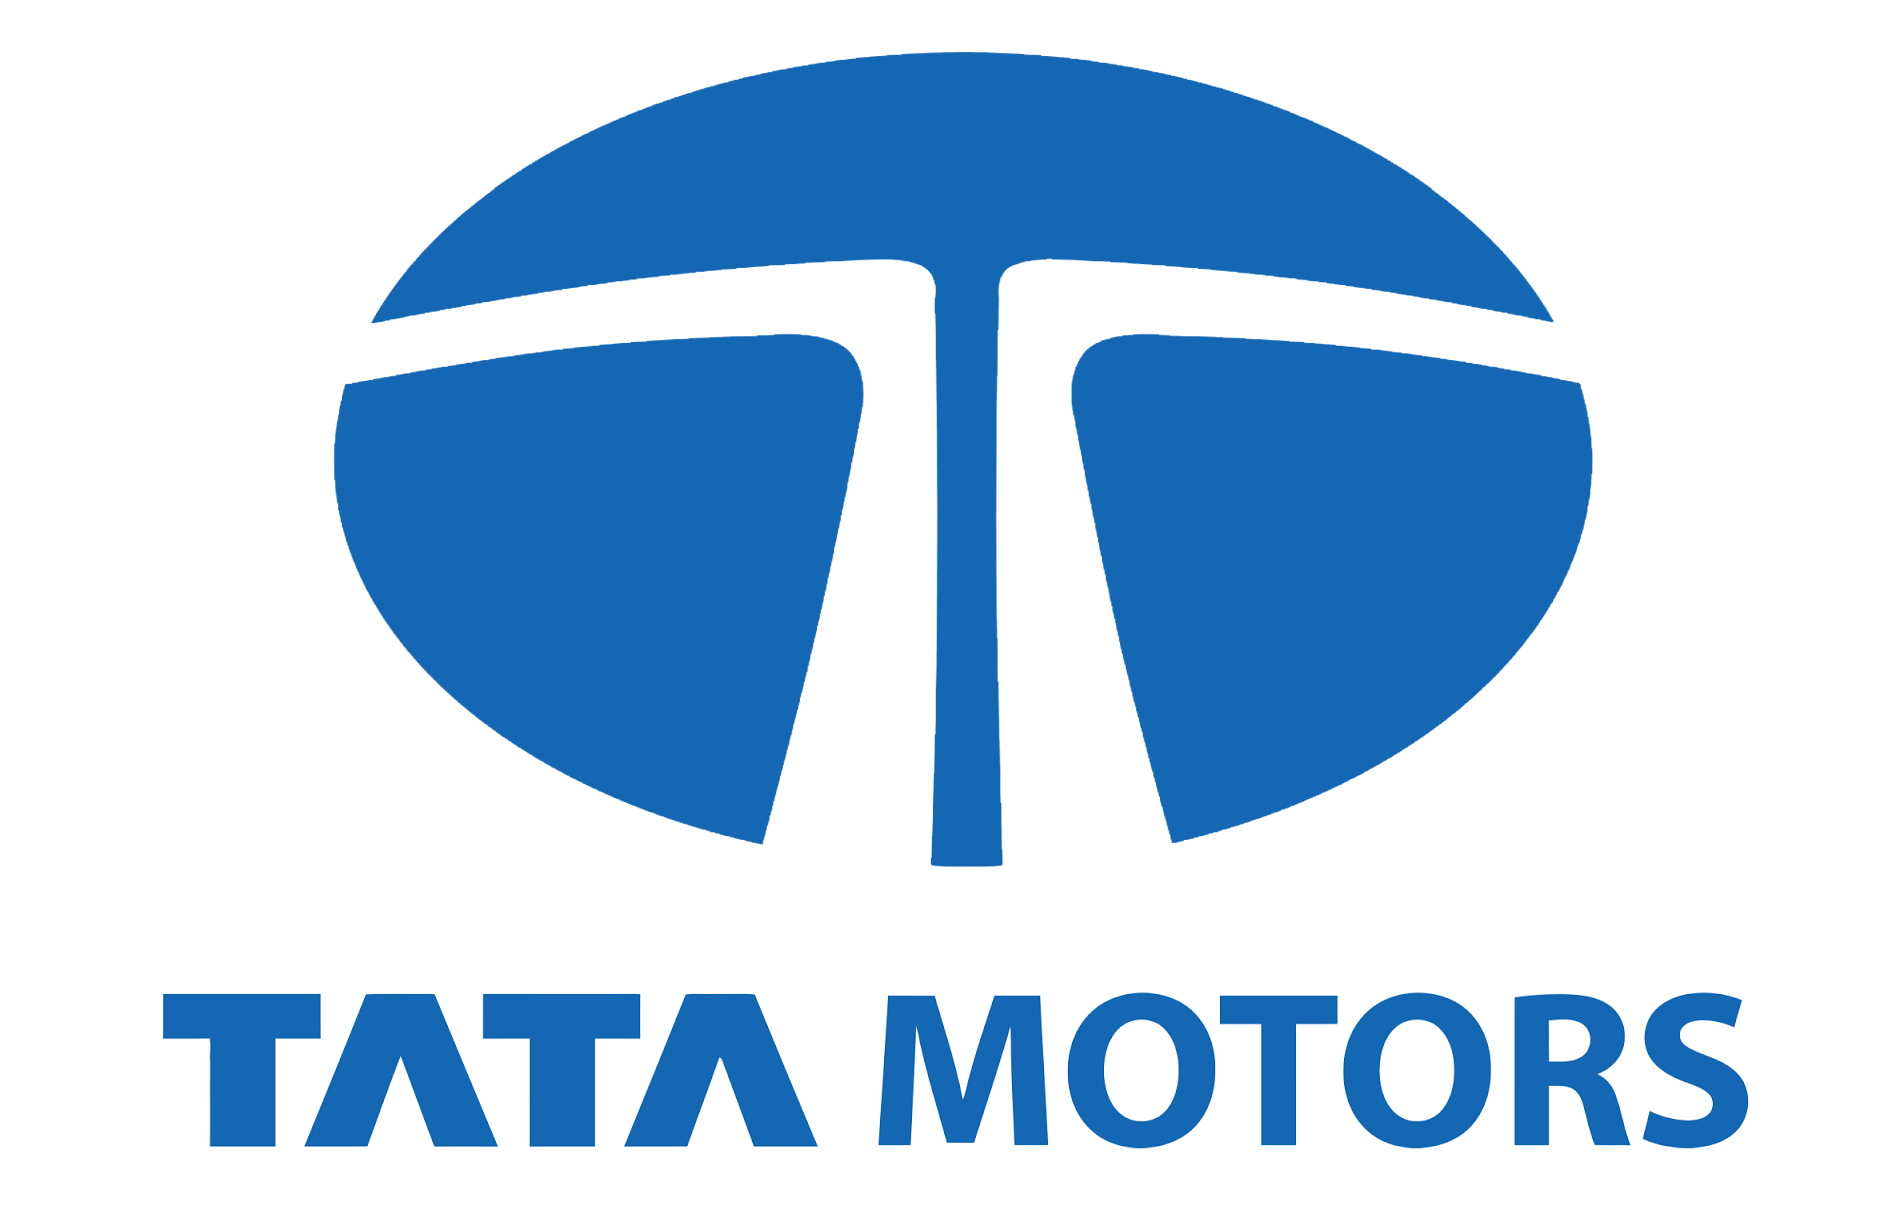 Tata Motors Cars Showroom - JMK Motors|Show Room|Automotive